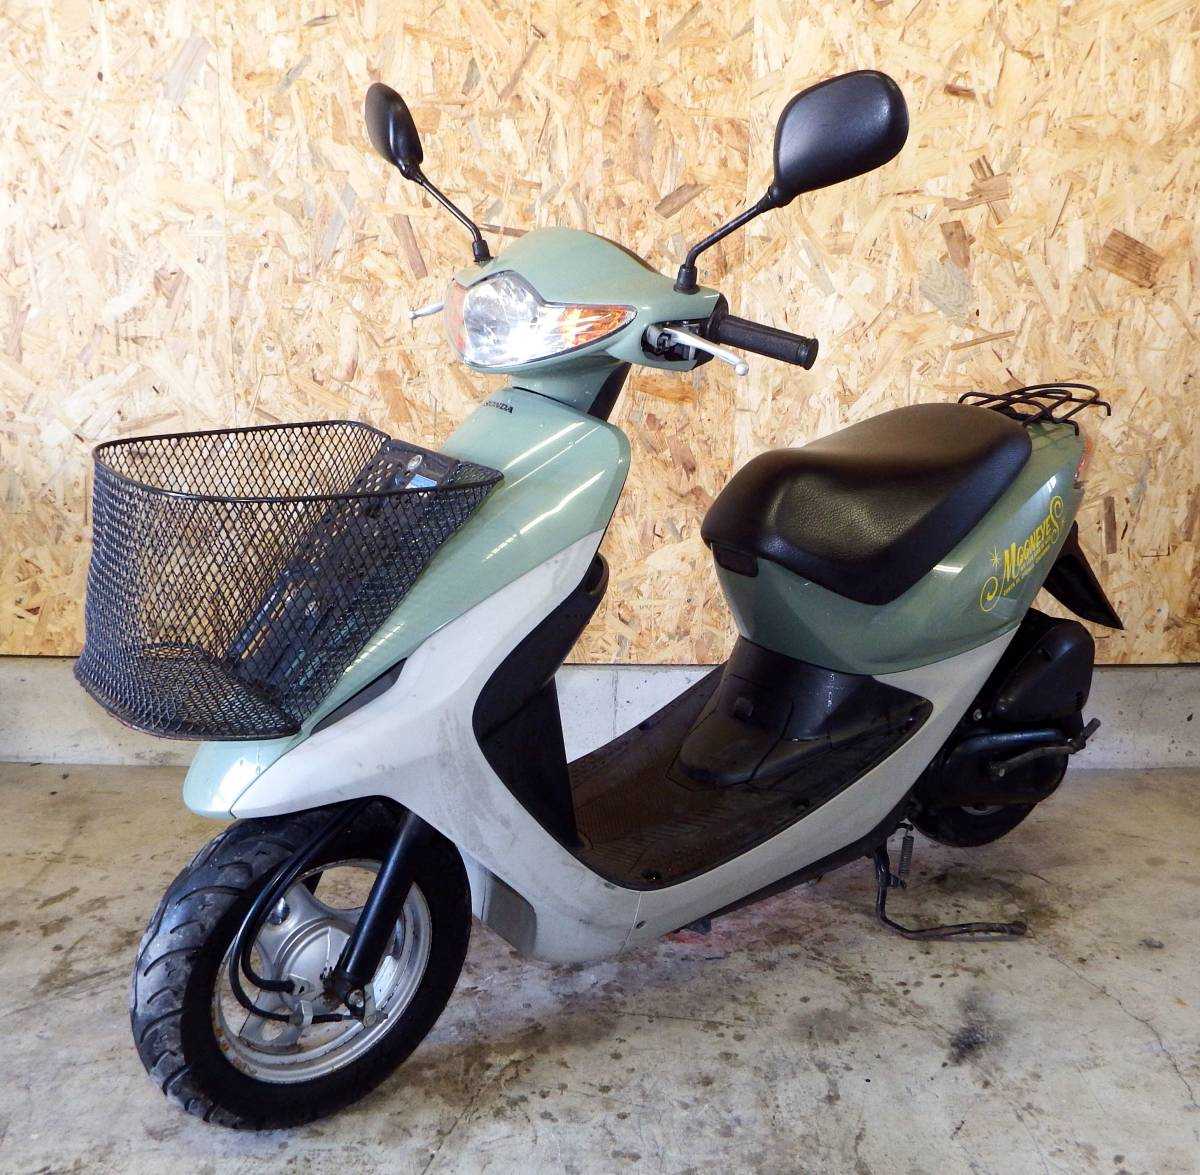 Honda dio 27 (хонда дио 27) — обзор надежного скутера для передвижения по городу